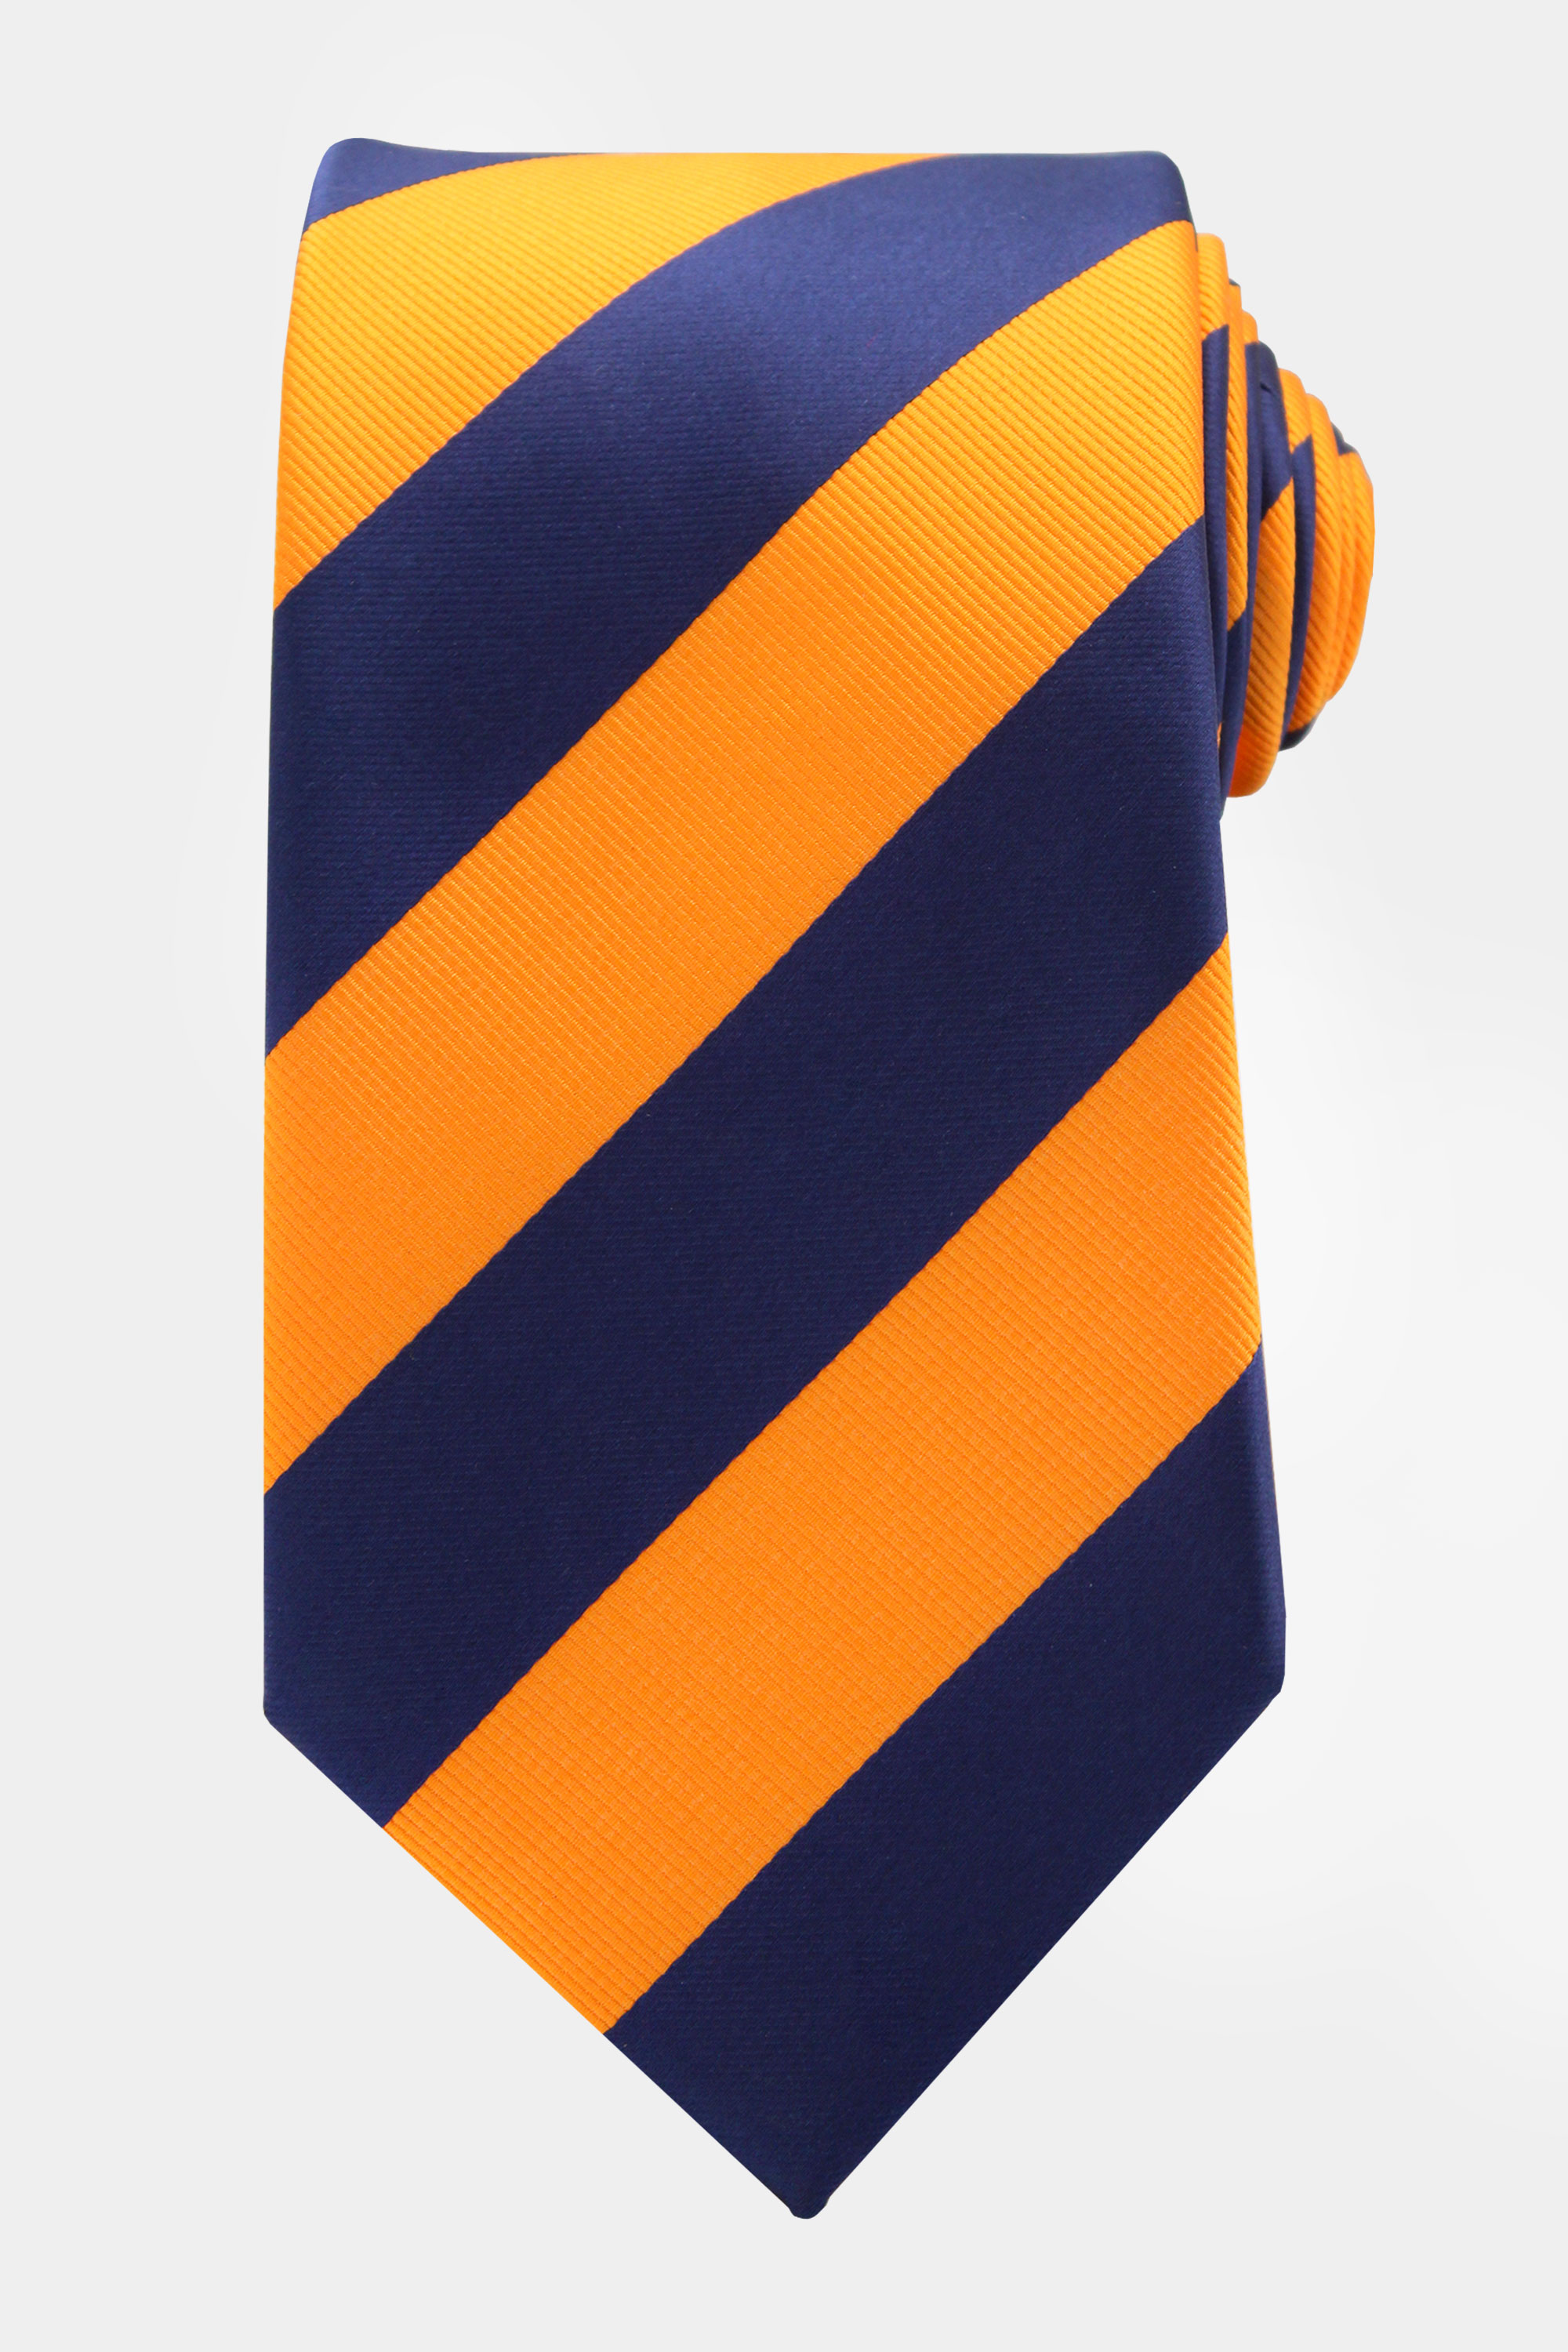 Orange-and-Navy-Blue-Striped-Tie-from-Gentlemansguru.com